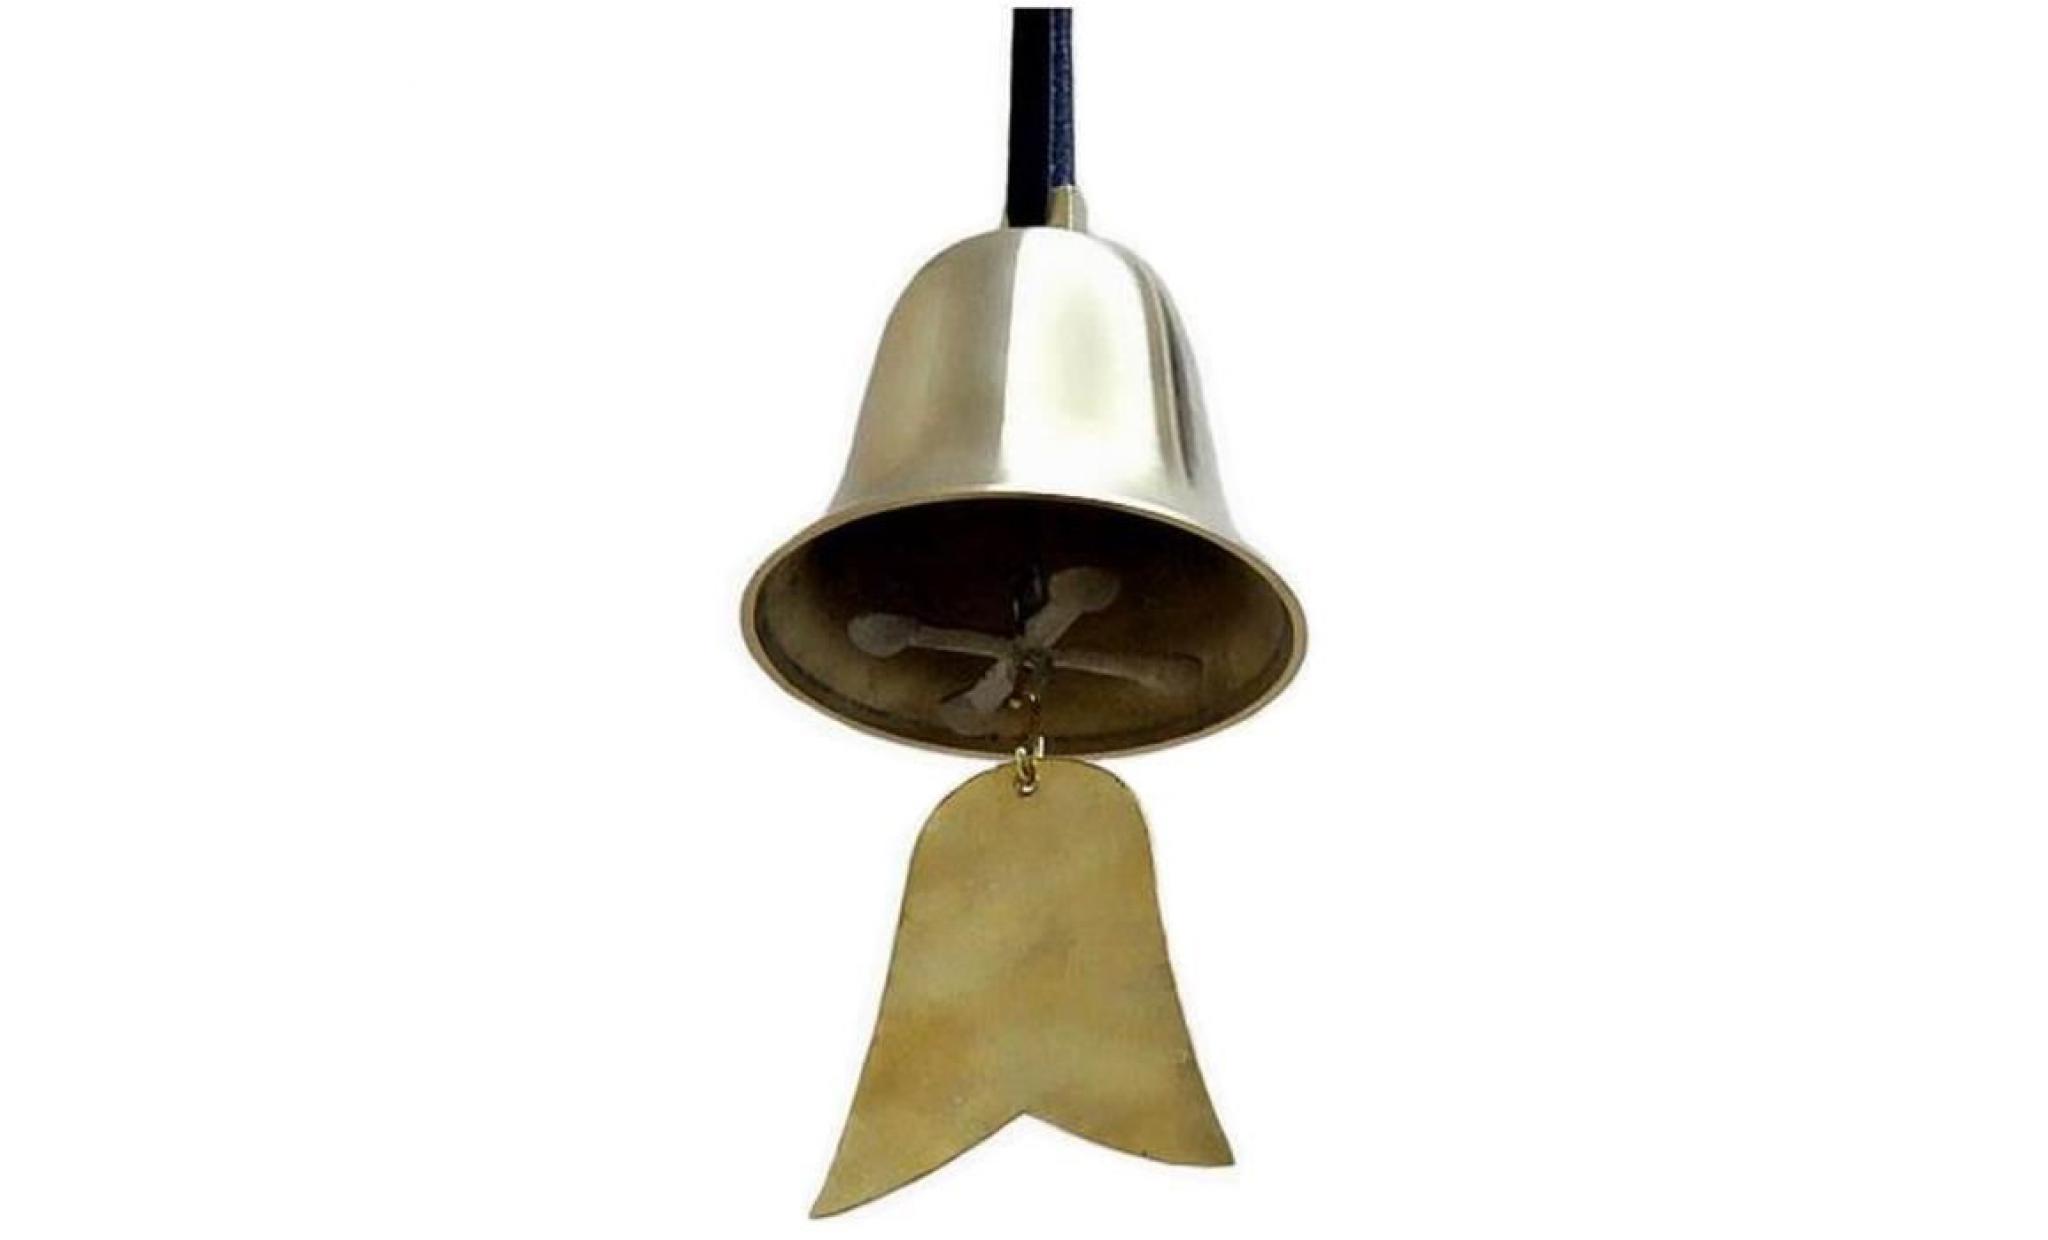 chimes classique vent métal cuivre bells vent hanging décor